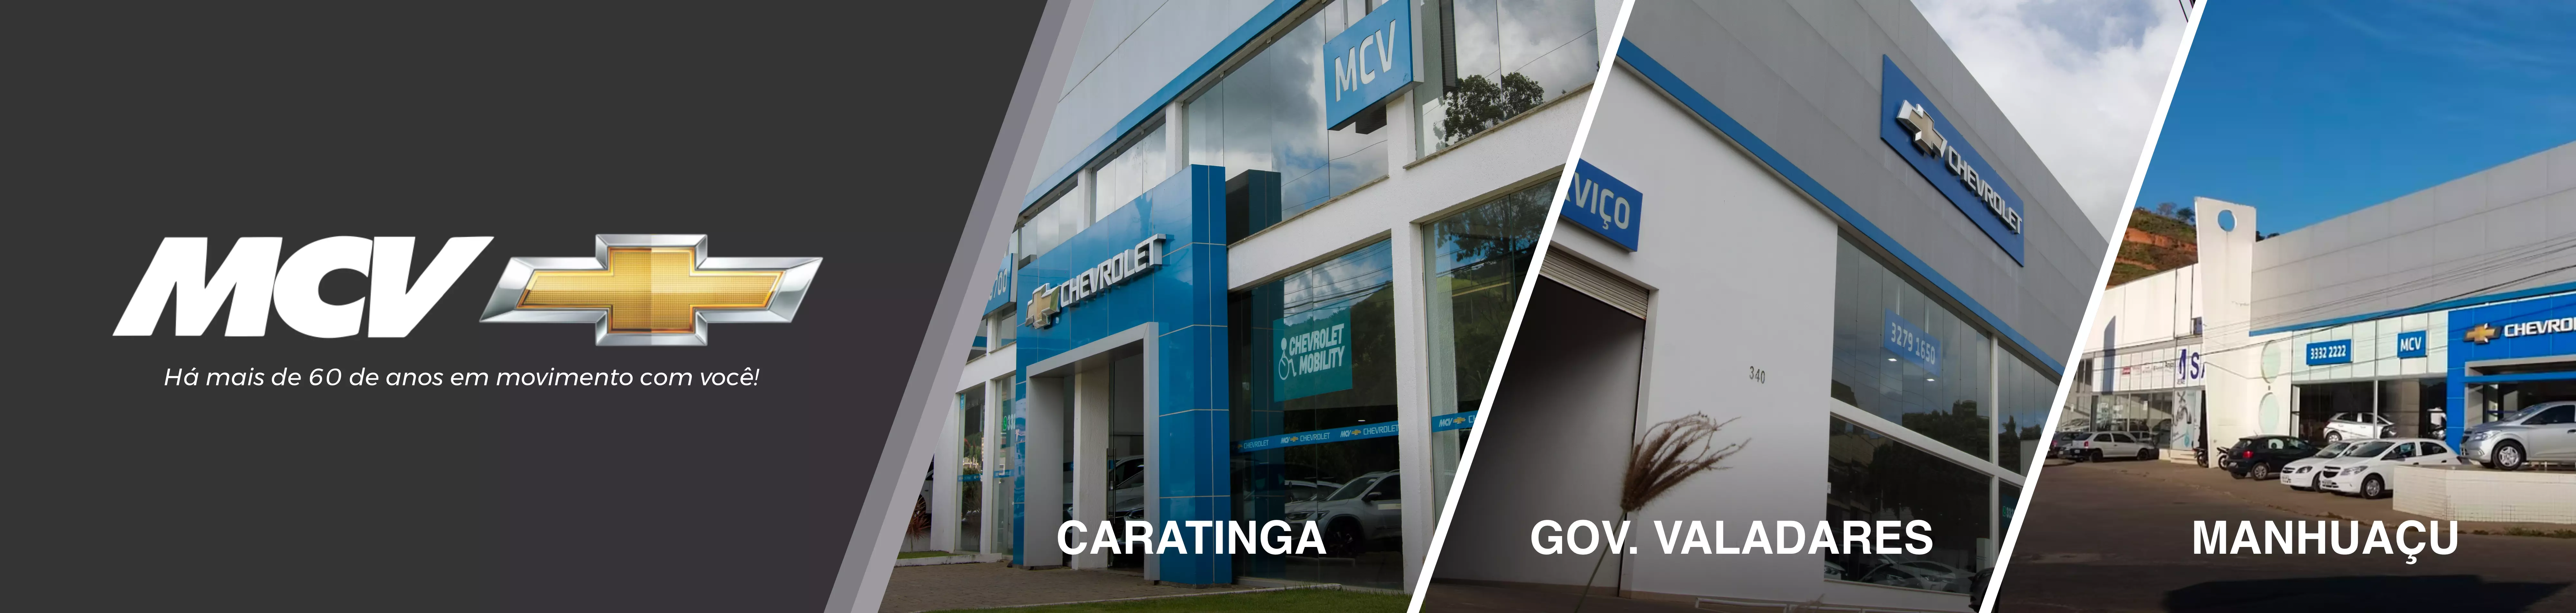 Venda e ofertas de carros novos e seminovos na concessionária Chevrolet MCV Minas Gerais. Peças genuínas GM, acessórios automotivos originais e serviços de manutenção e revisão de veículos.